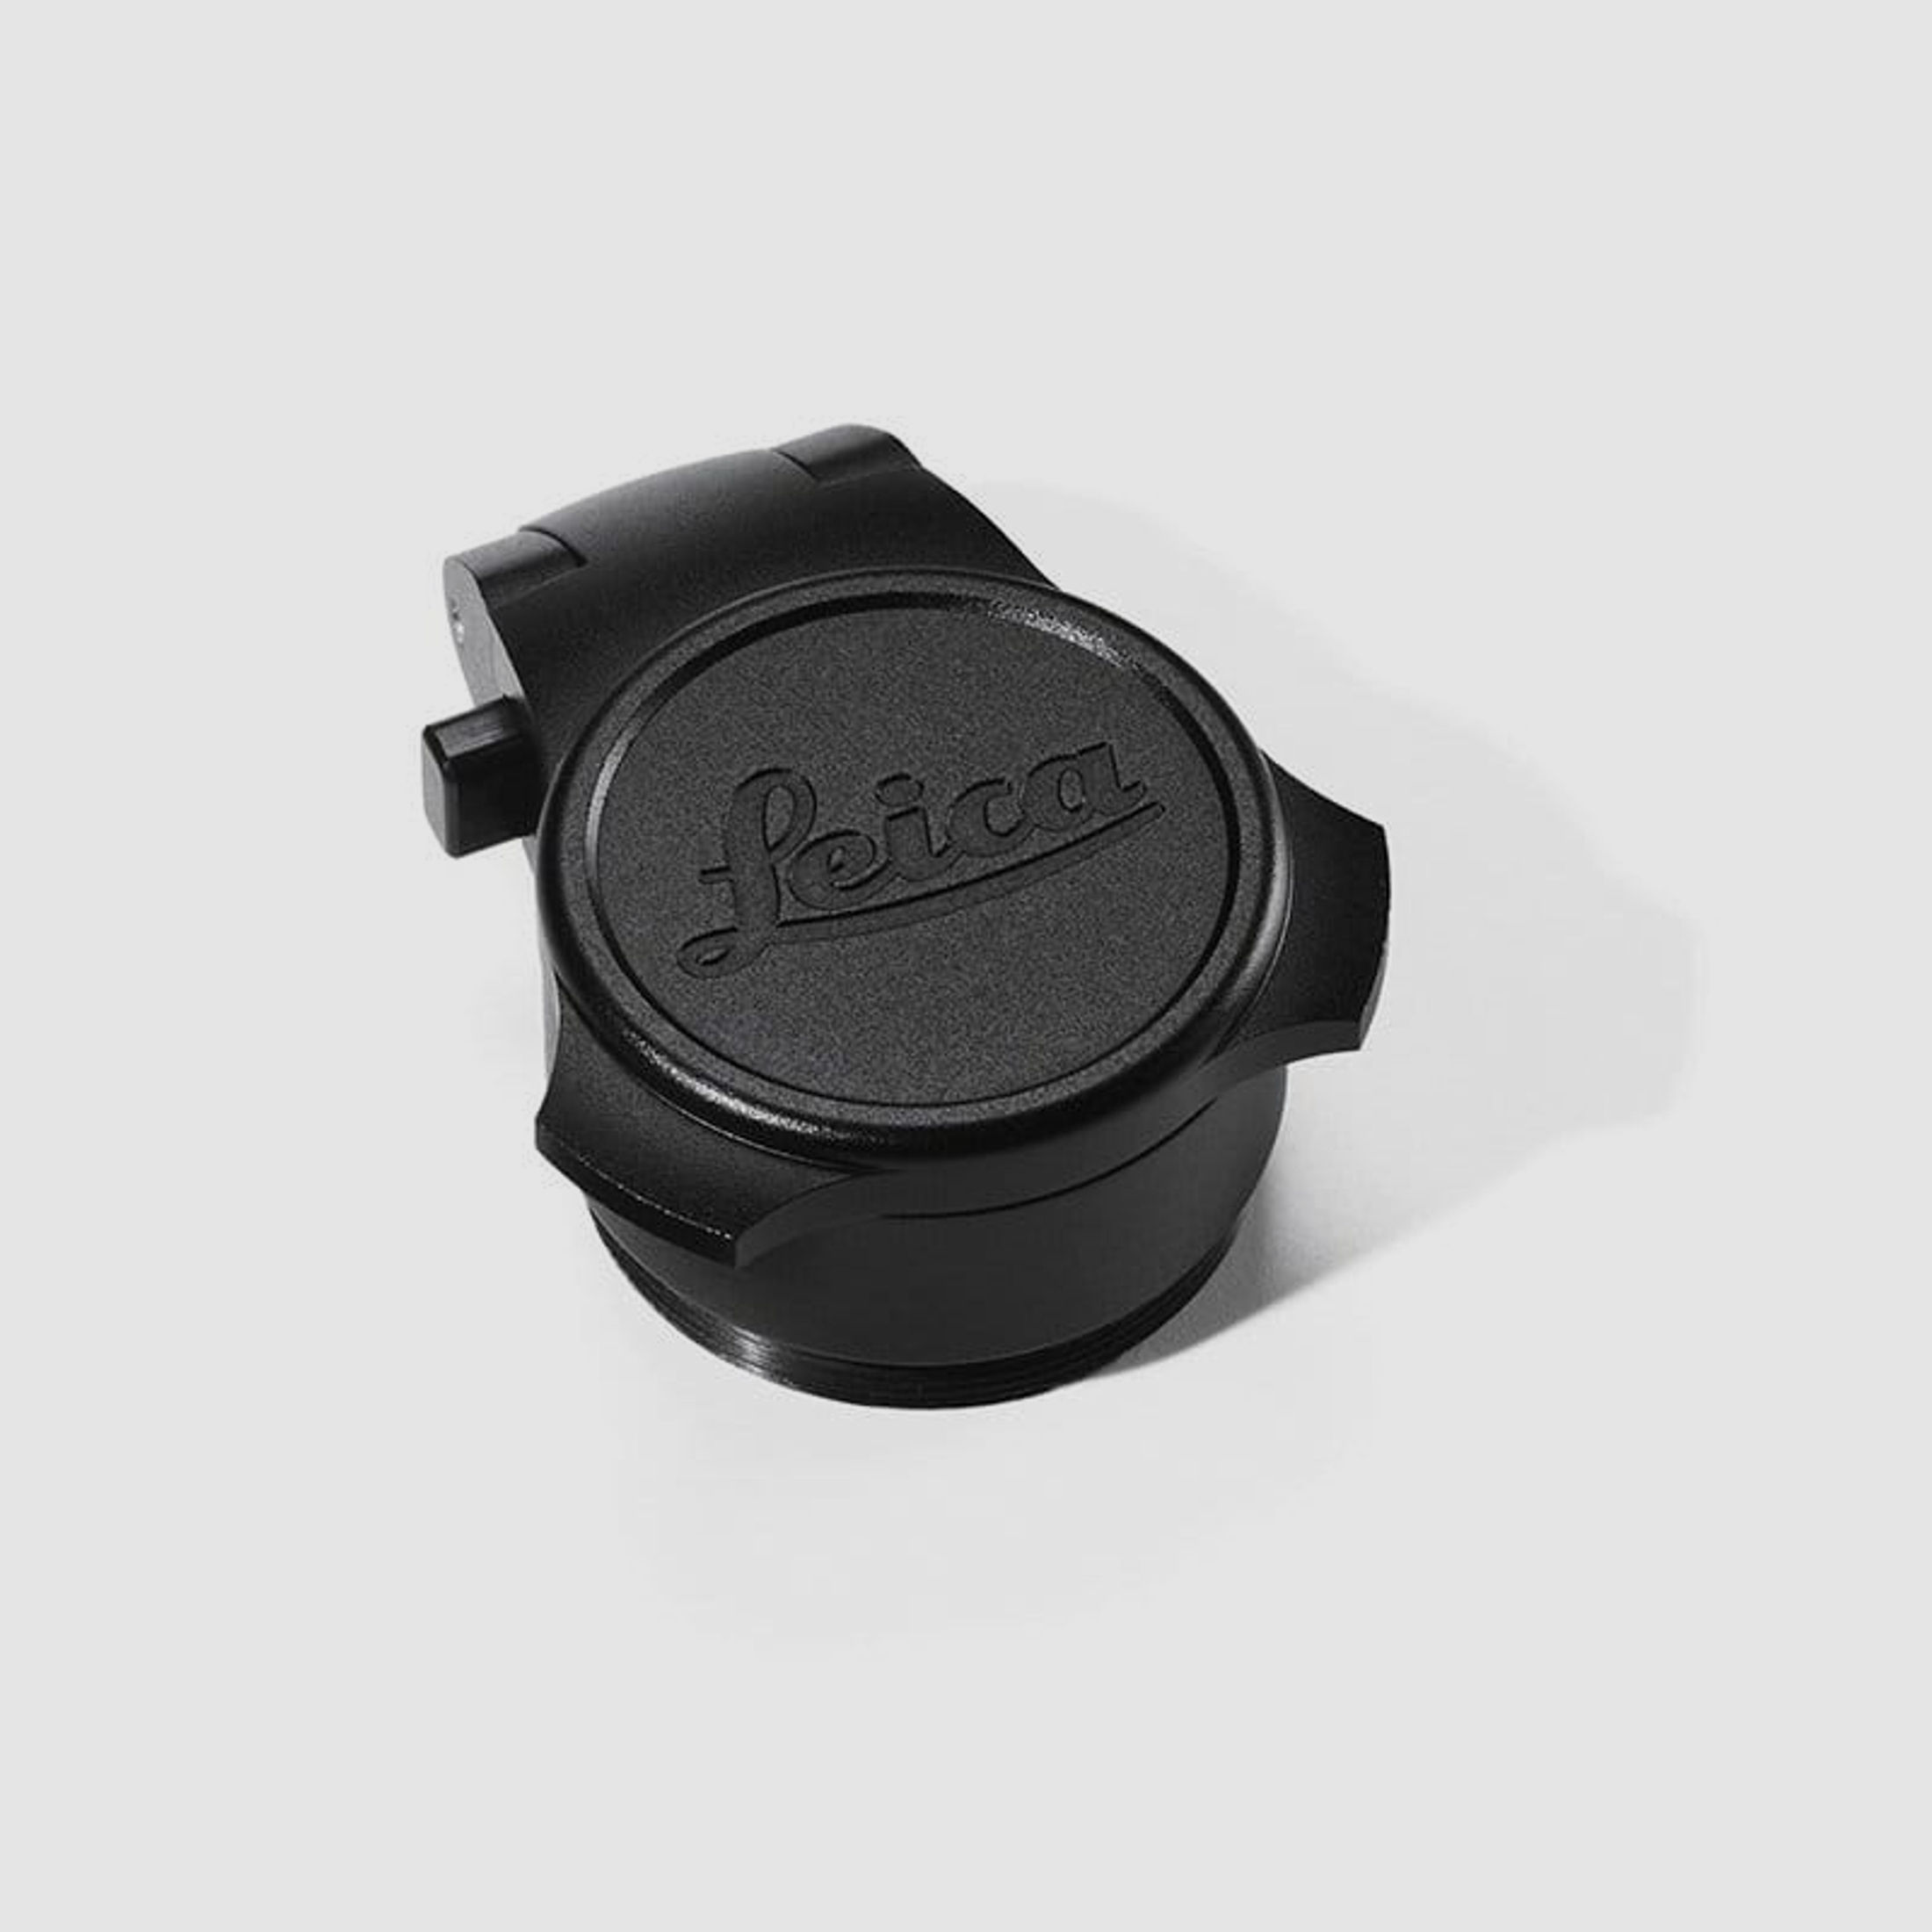 Leica Objektiv Flip Cap für Magnus i und Fortis 6